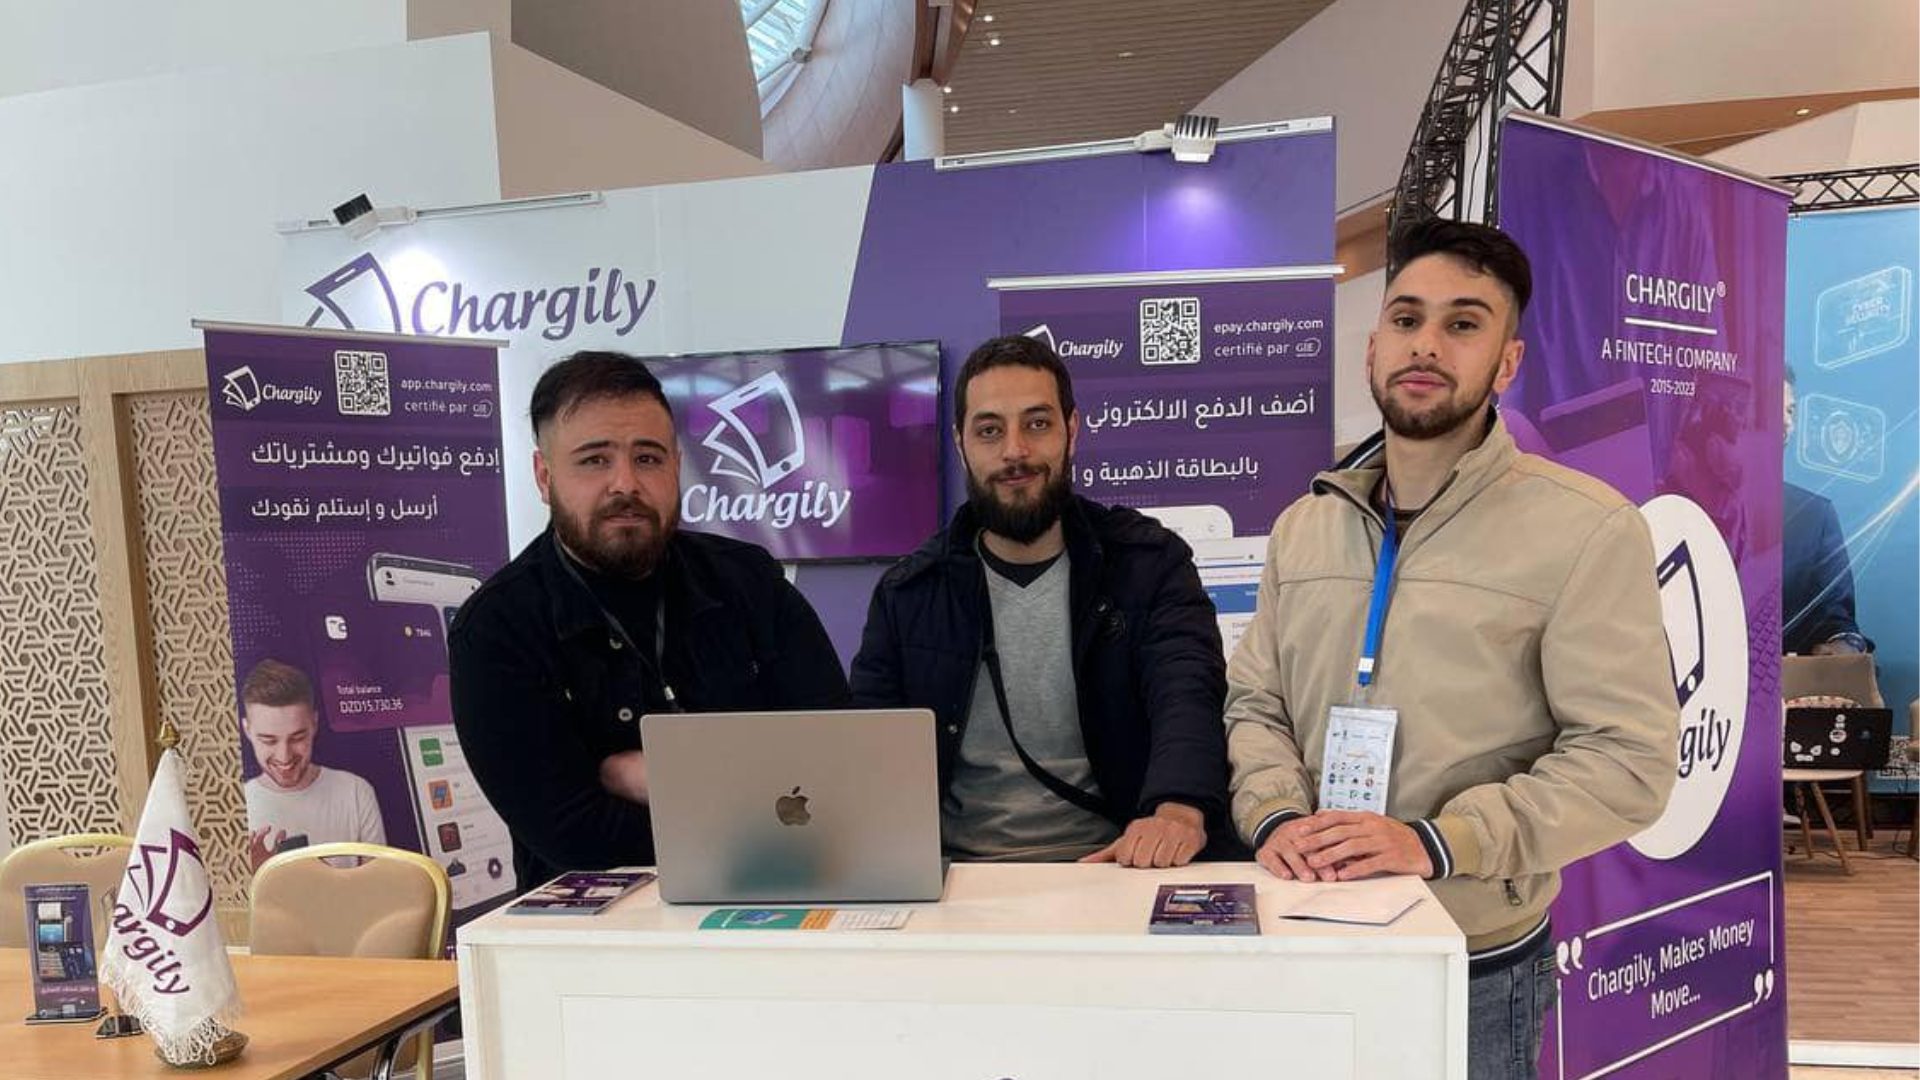 Algeria fintech e-commerce summit